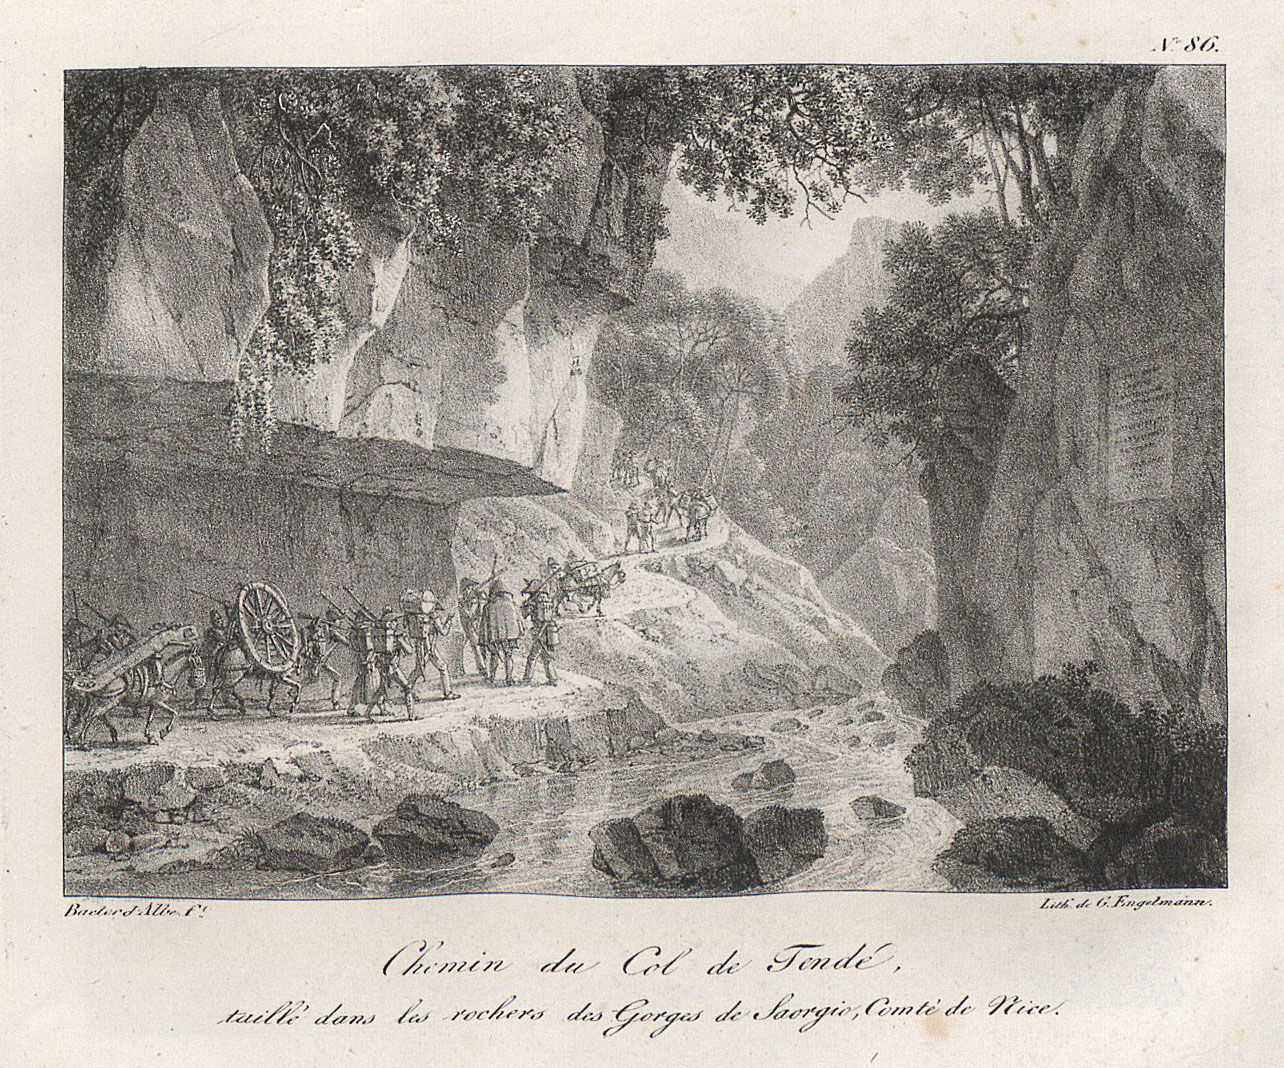 Chemin du Col de Tondé, taillé dans les rochers des Gorges de Saorgio, Comté de Nice.